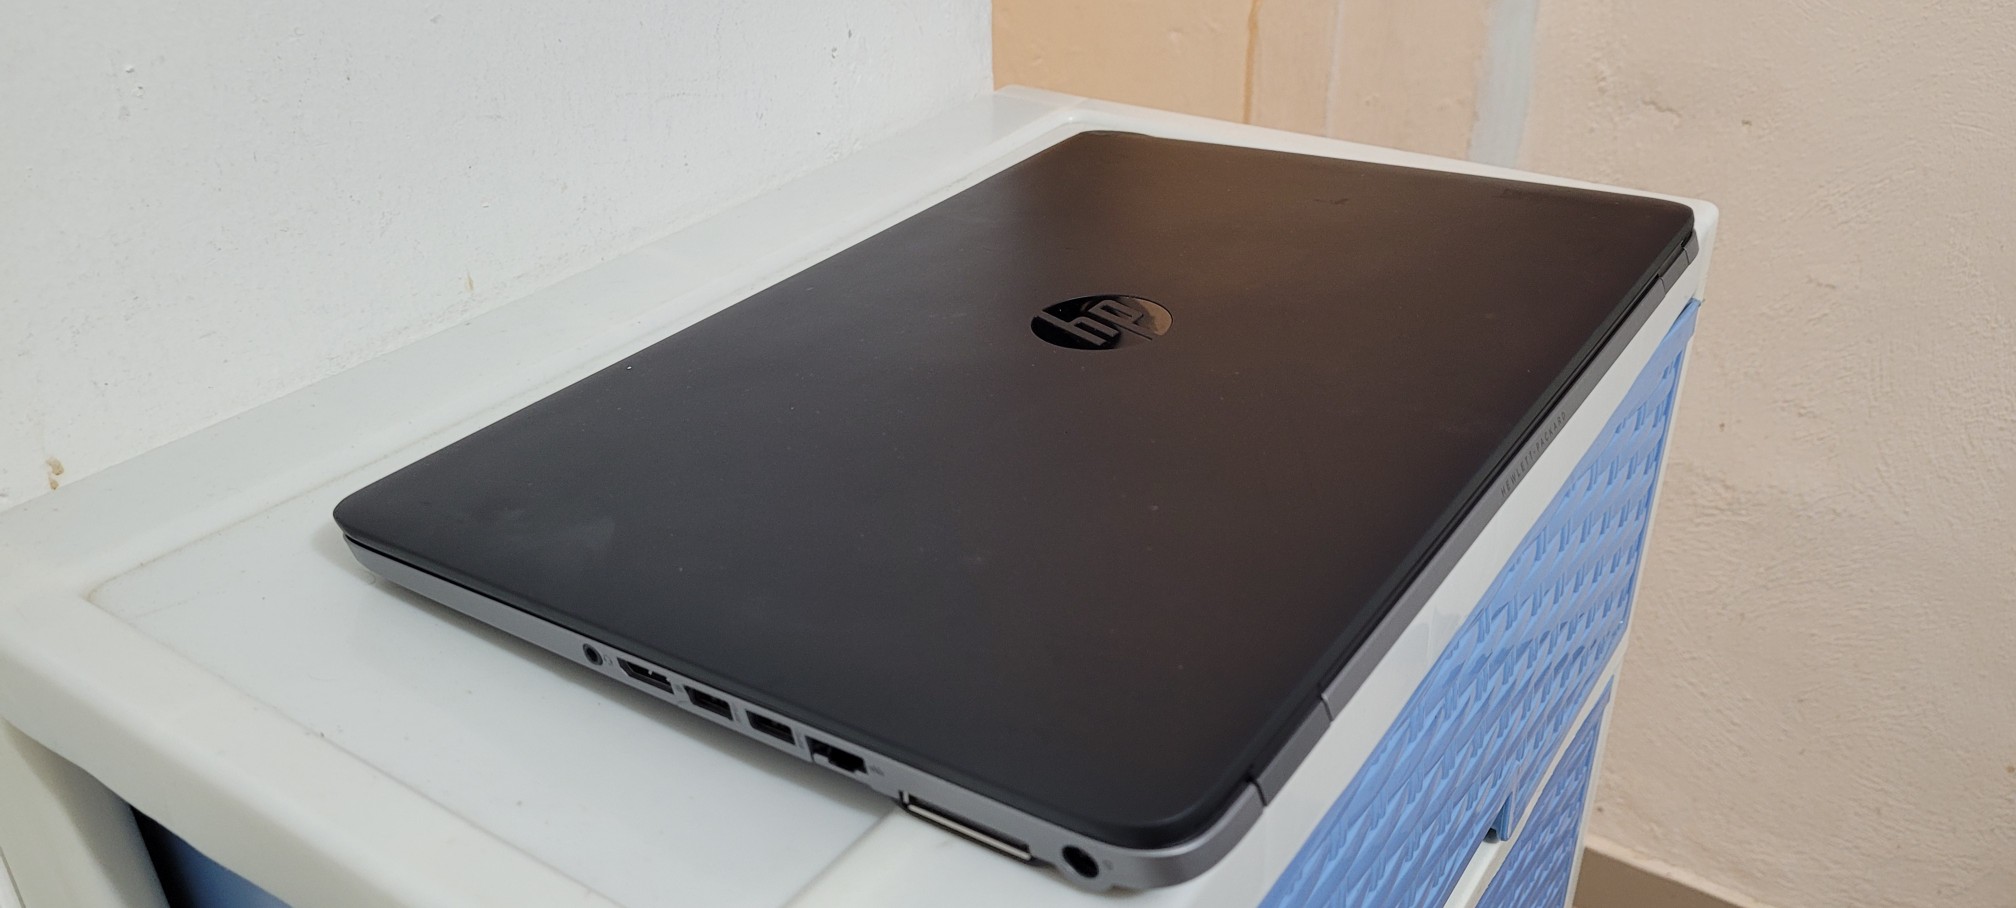 computadoras y laptops - Laptop hp Elitebook 17 Pulg Core i5 Ram 8gb Disco 256gb SSD Solido  2